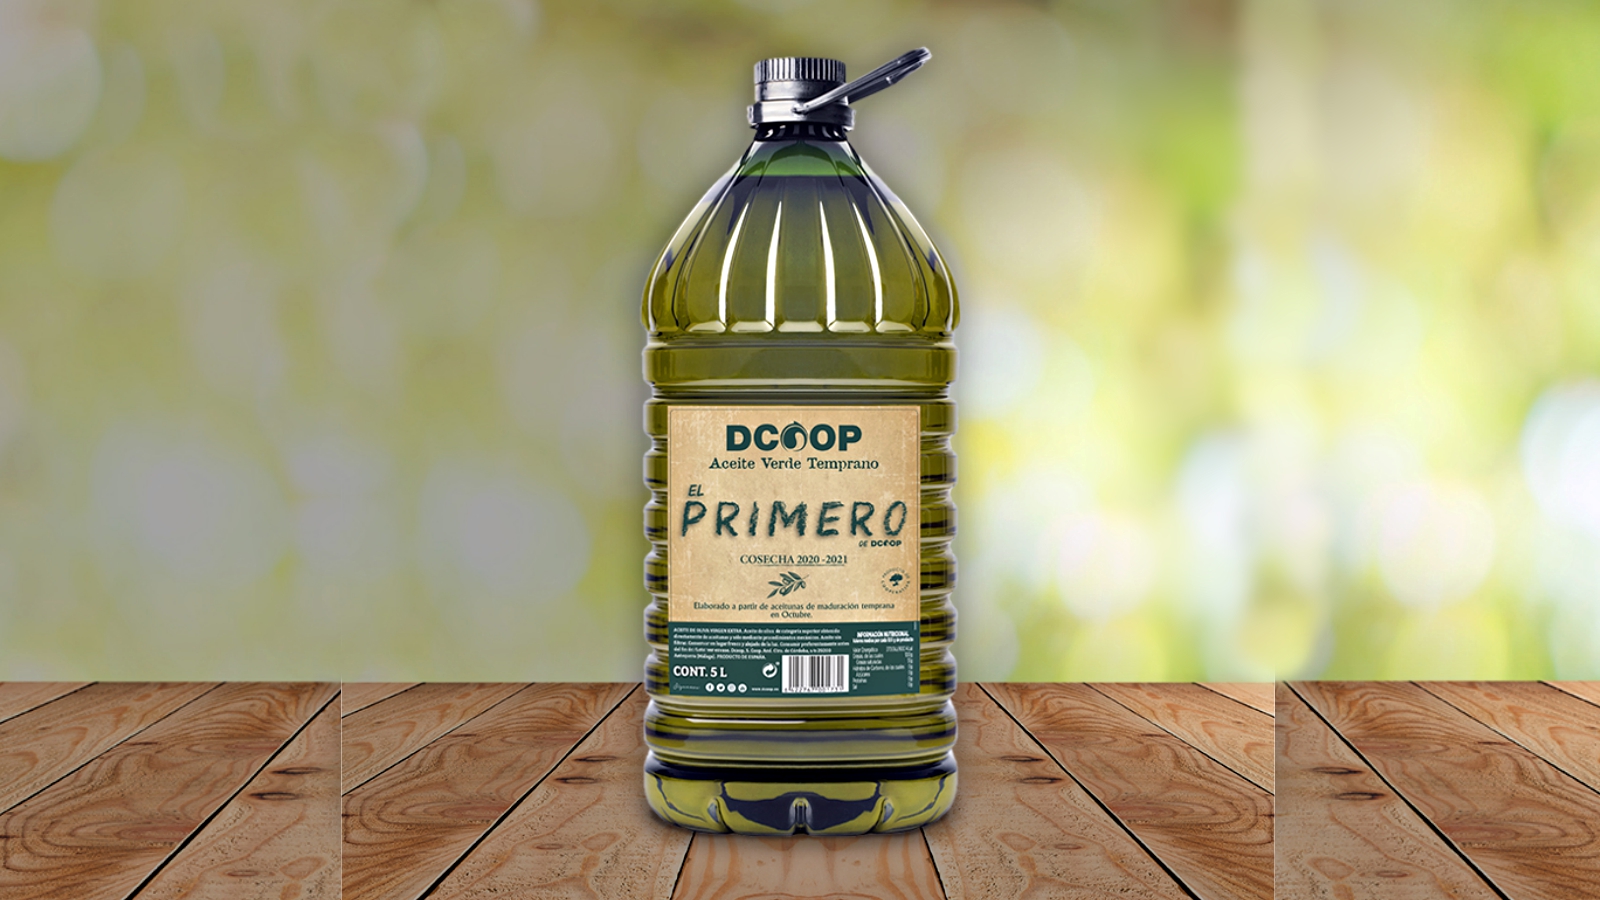 El Primero aceite oliva verde temprano Dcoop